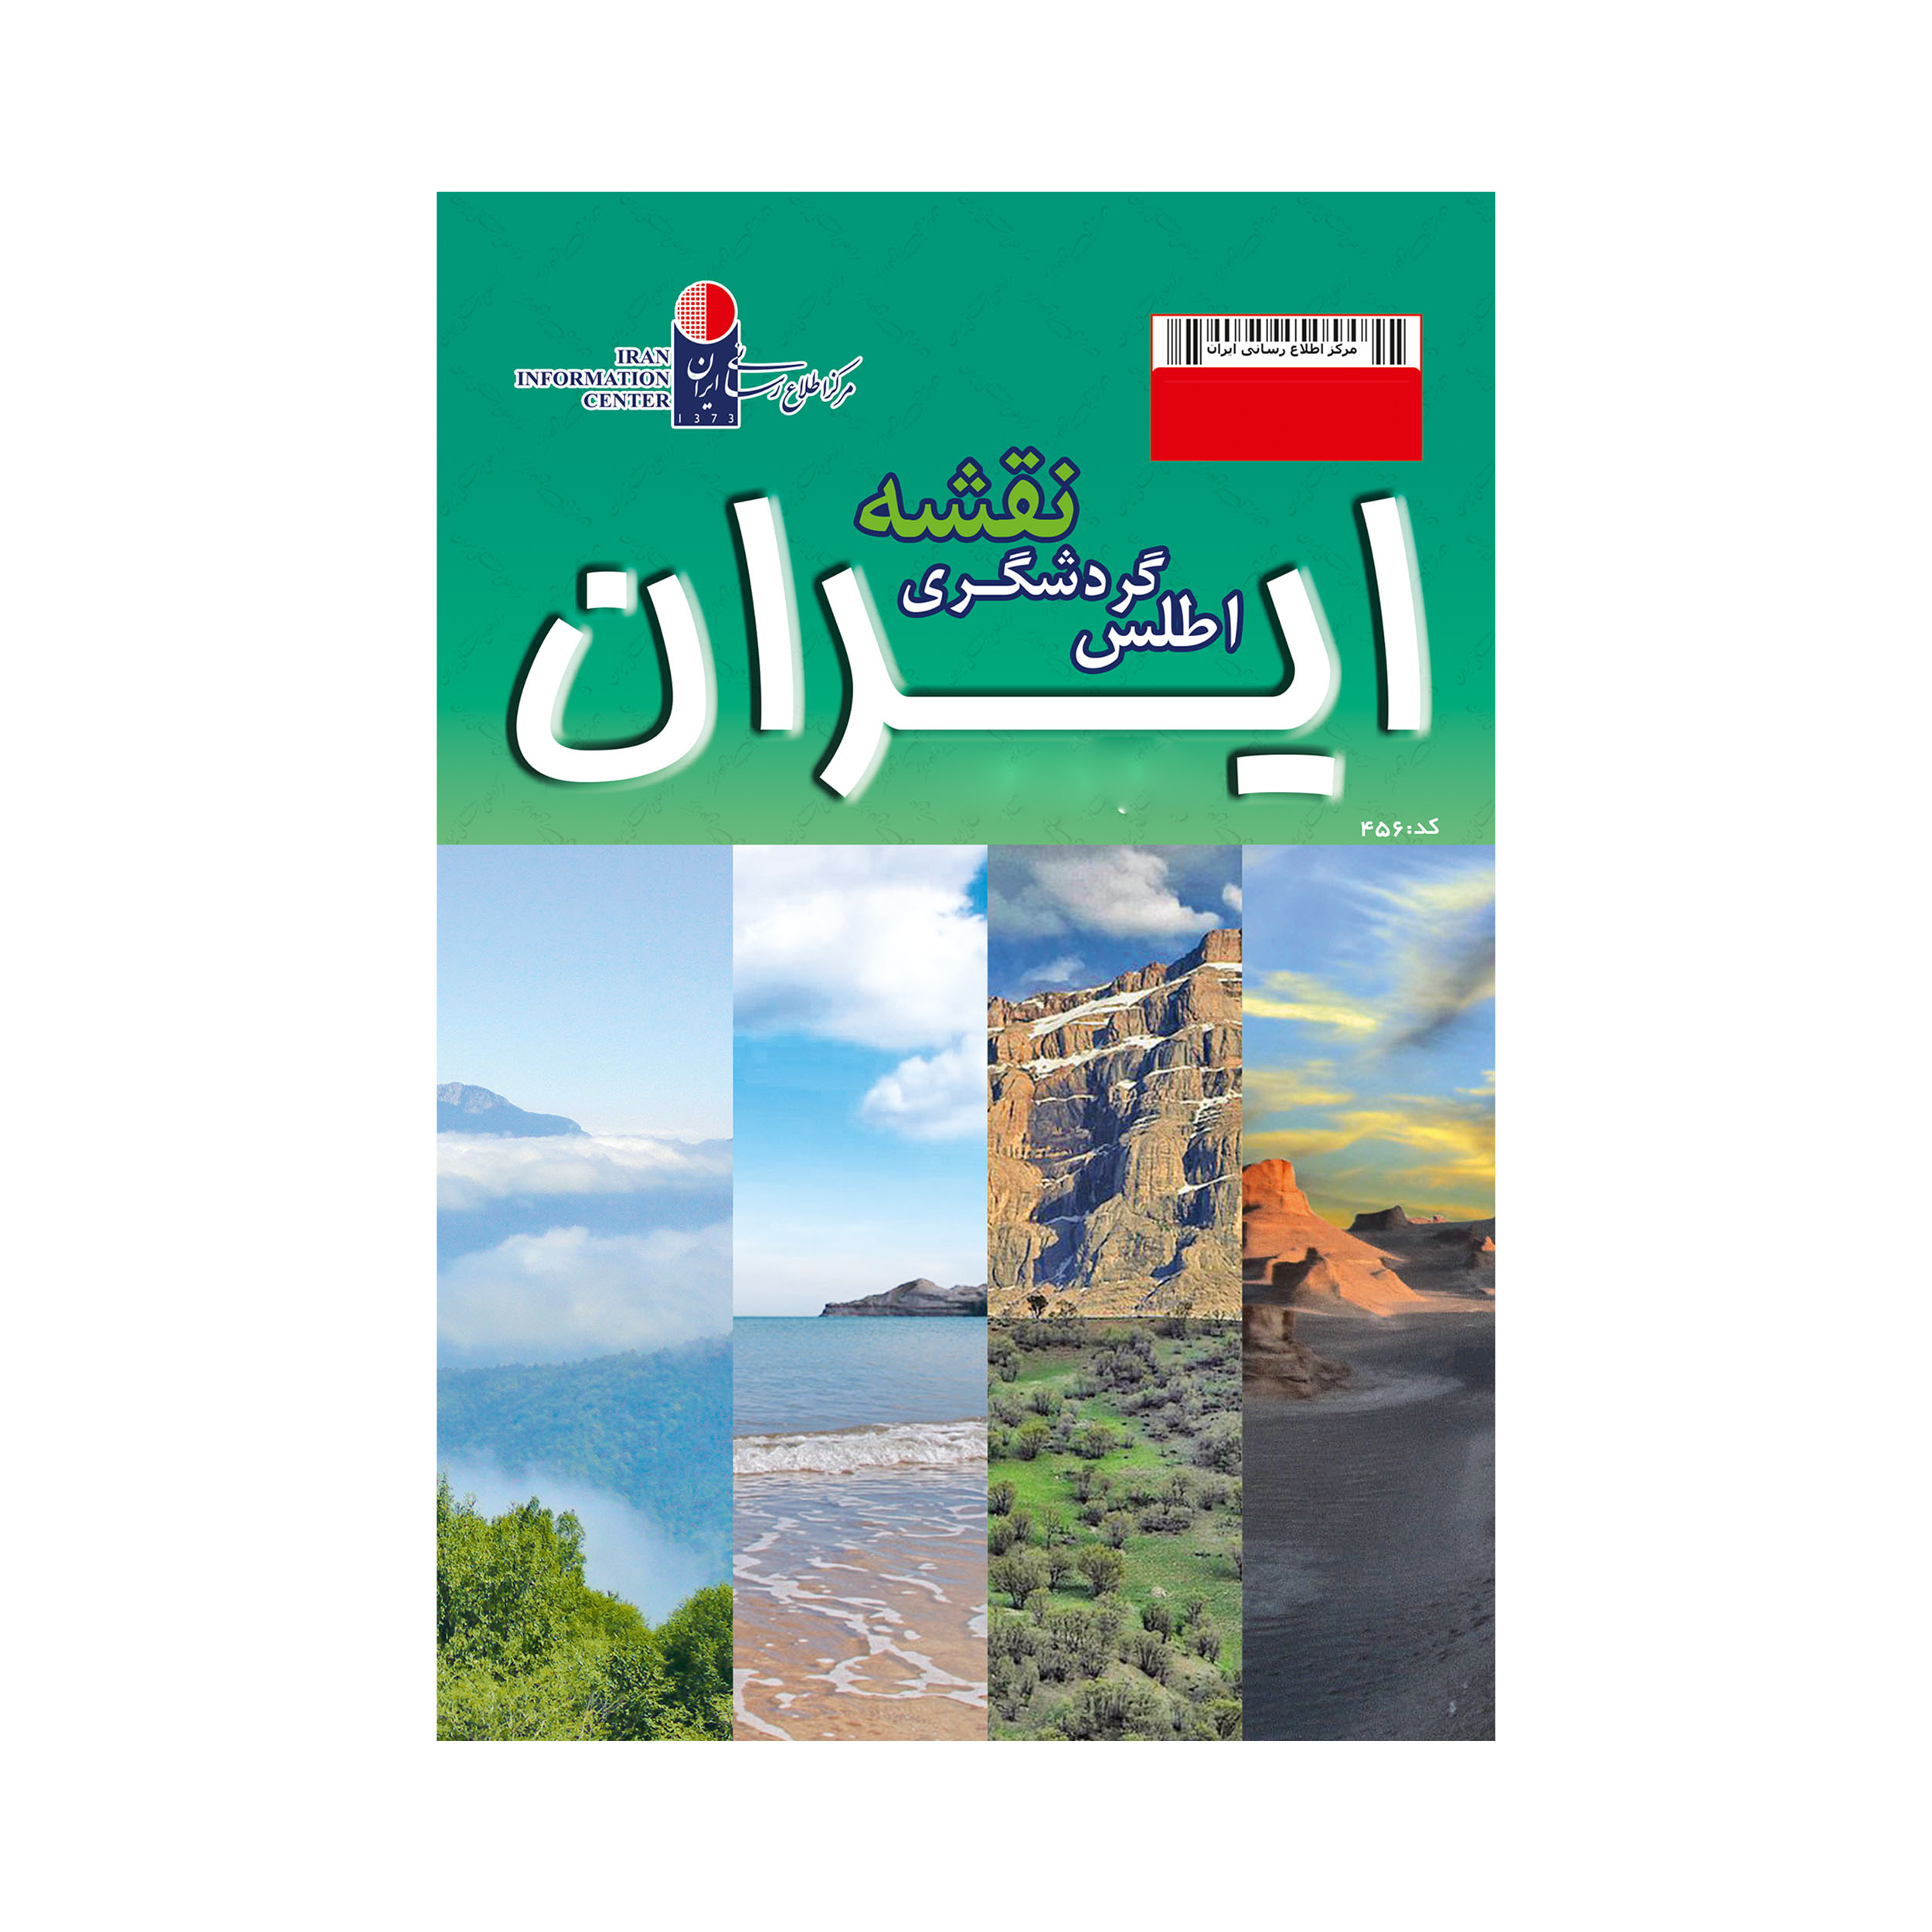 اطلس گردشگری نقشه ایران اثر مرکز اطلاع رسانی ایران